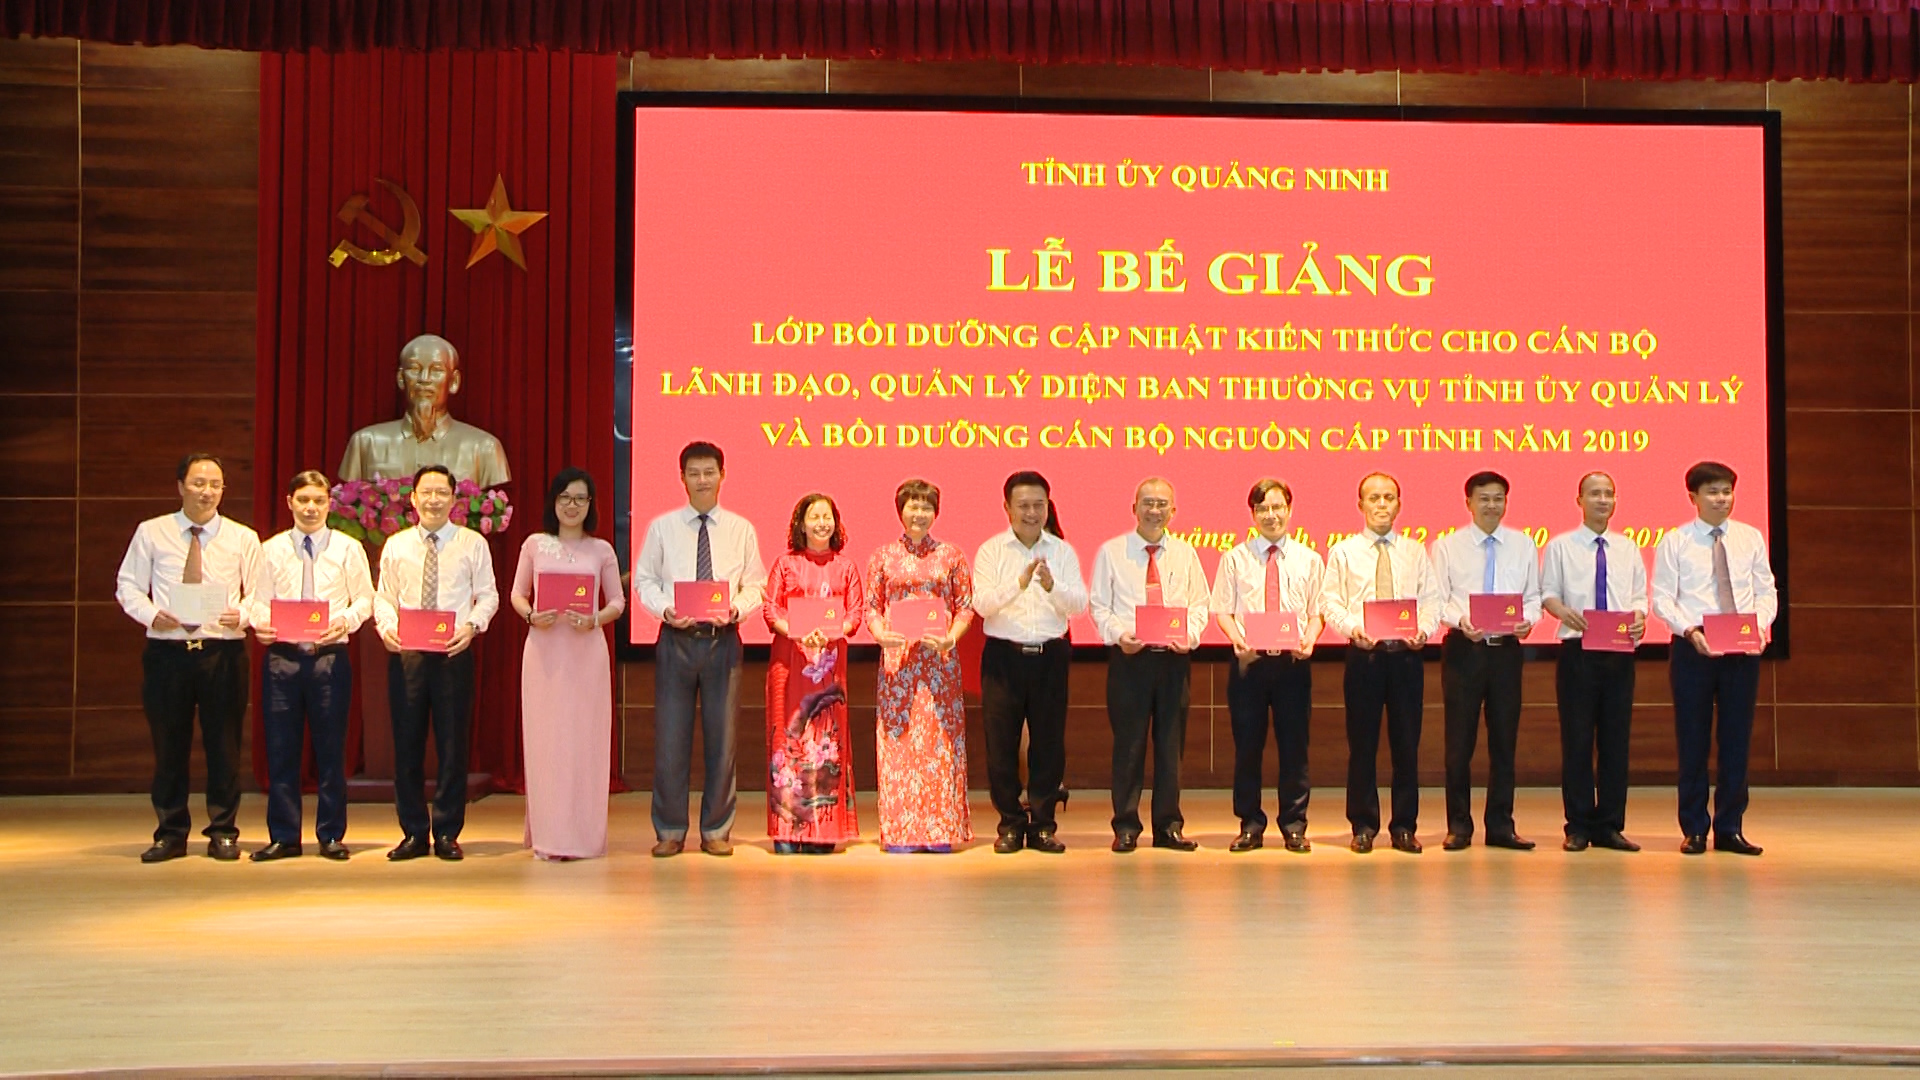 Tỉnh ủy Quảng Ninh tổ chức bế giảng lớp Bồi dưỡng cập nhật kiến thức cho cán bộ lãnh đạo, quản lý diện Ban thường vụ Tỉnh ủy quản lý và lớp Bồi dưỡng cán bộ nguồn cấp tỉnh năm 2019